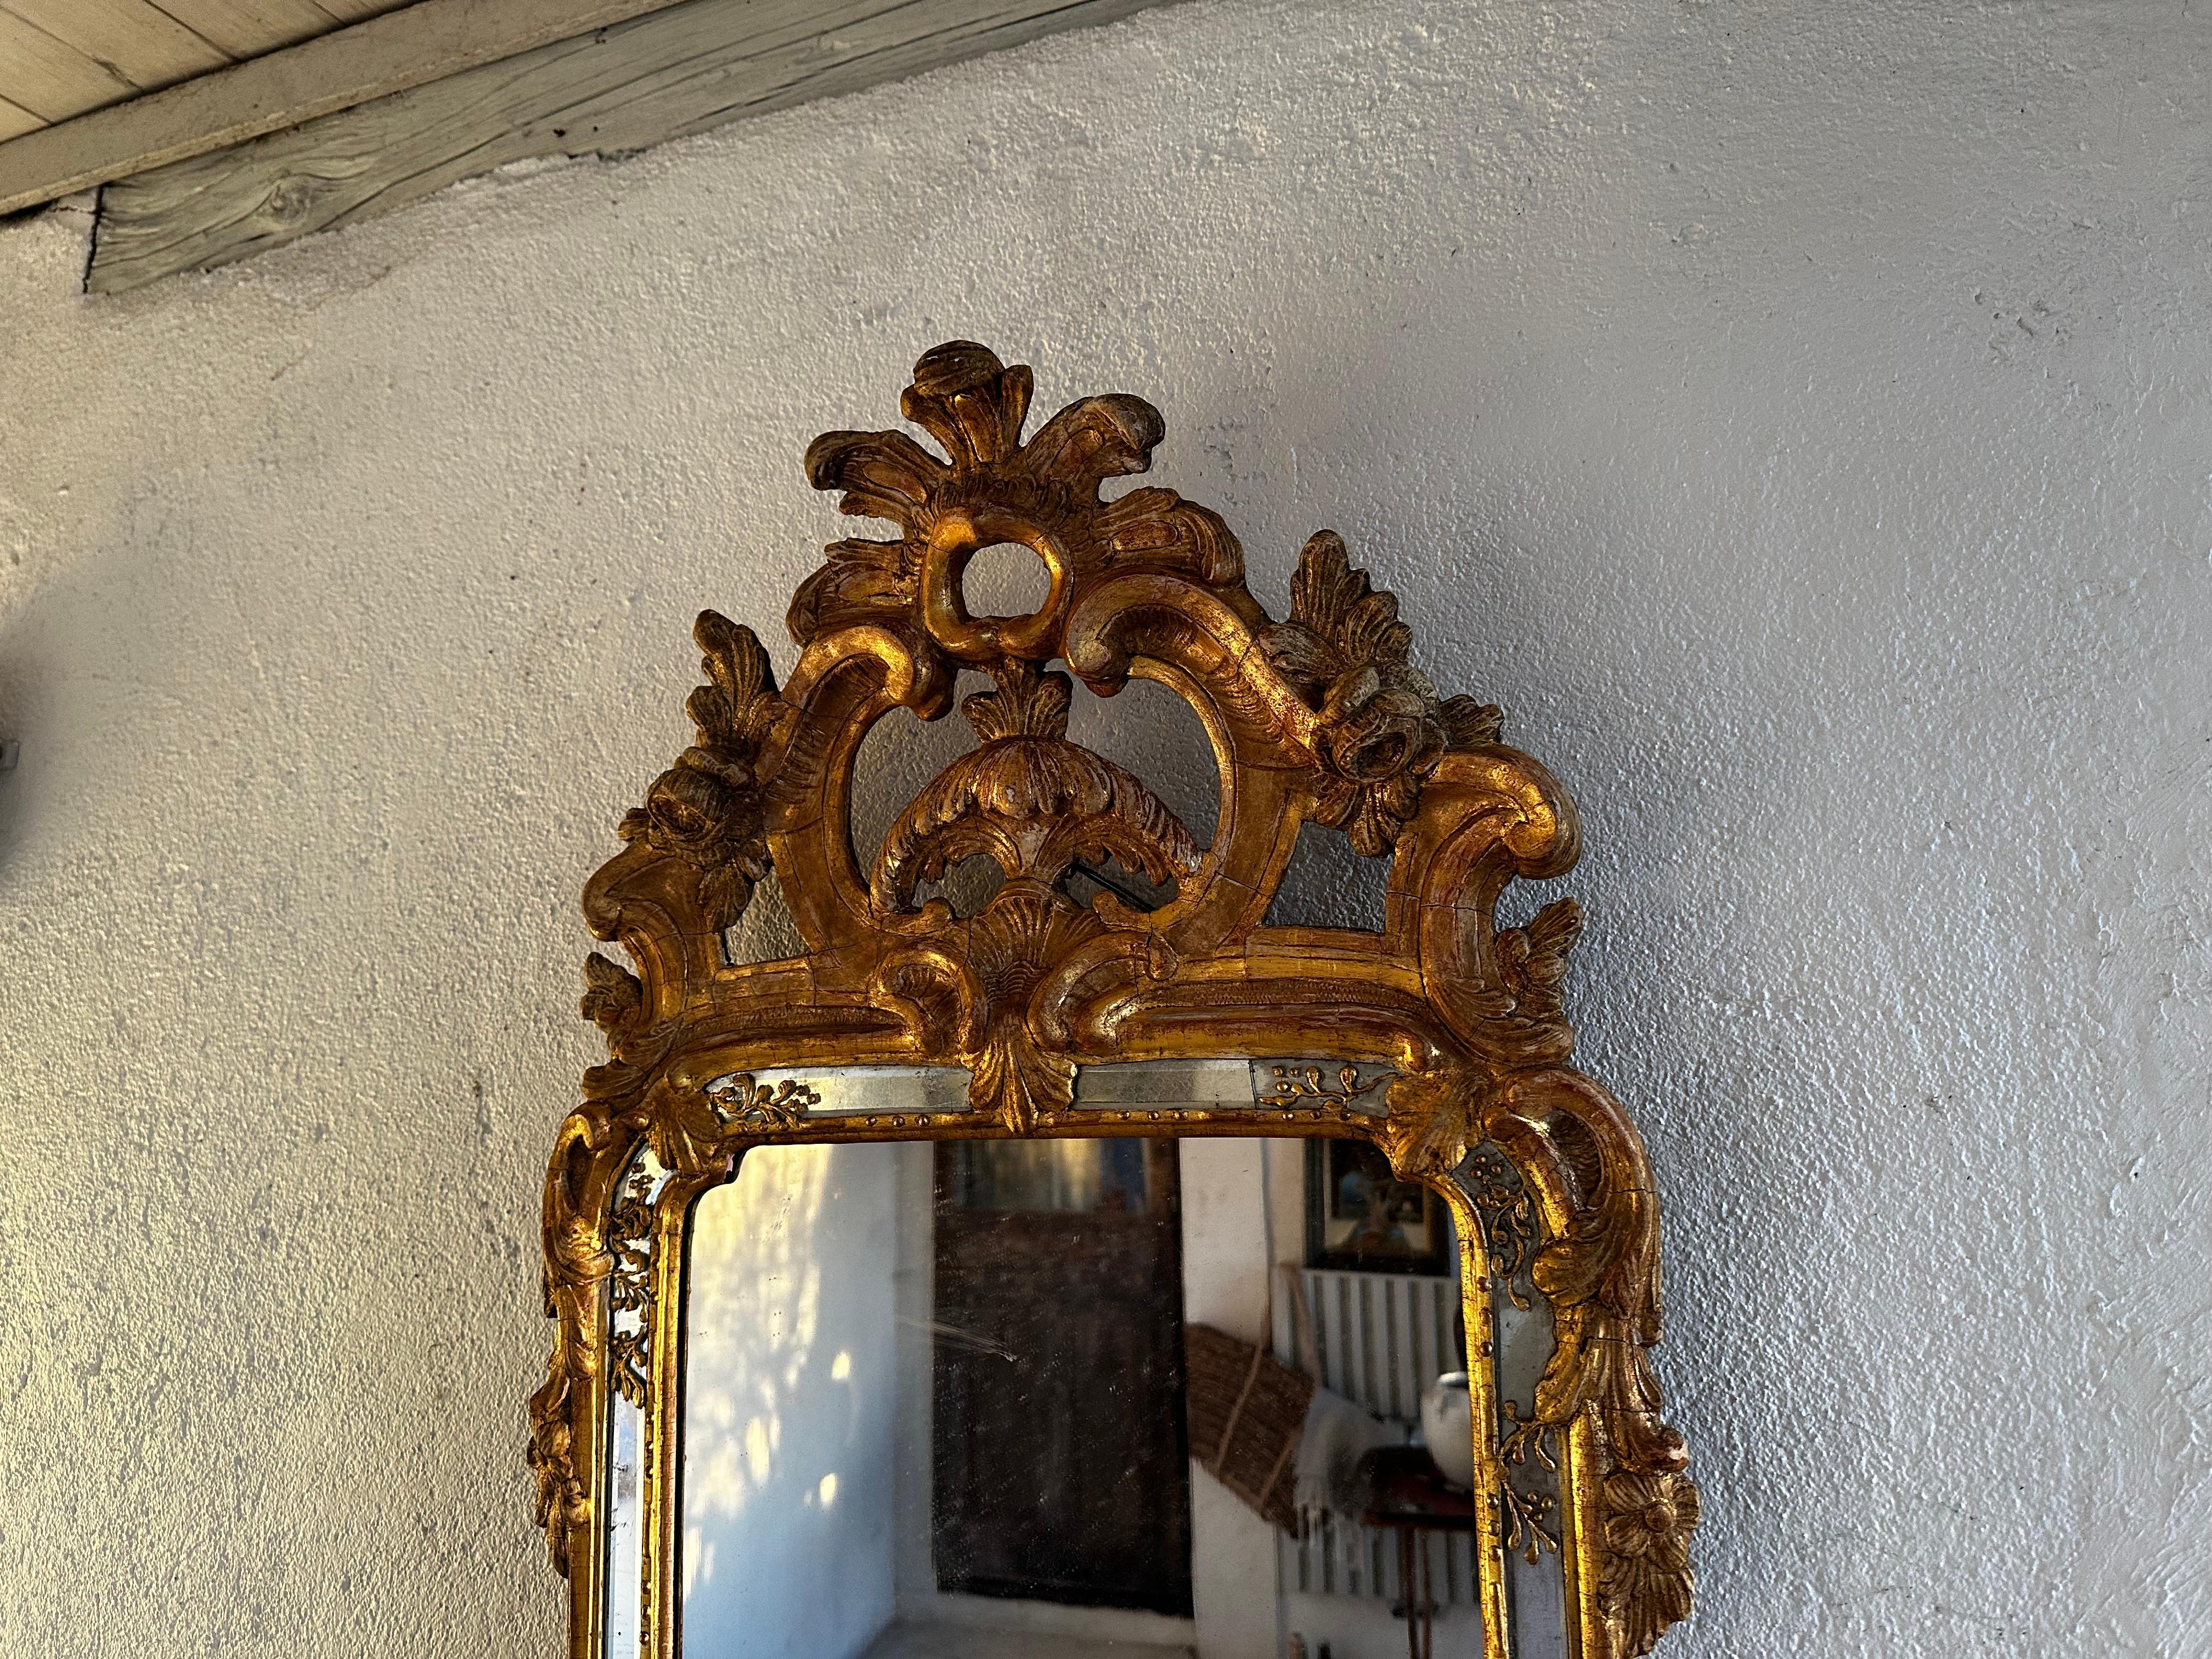 Ce miroir rococo est attribué à Niclas Meunier, 1754-97. Il a travaillé à Stockholm comme fabricant royal de miroirs à partir de 1769. Beau plateau avec Rocaille, volutes et acanthes. La partie inférieure est également décorée d'une Rocaille. Belle